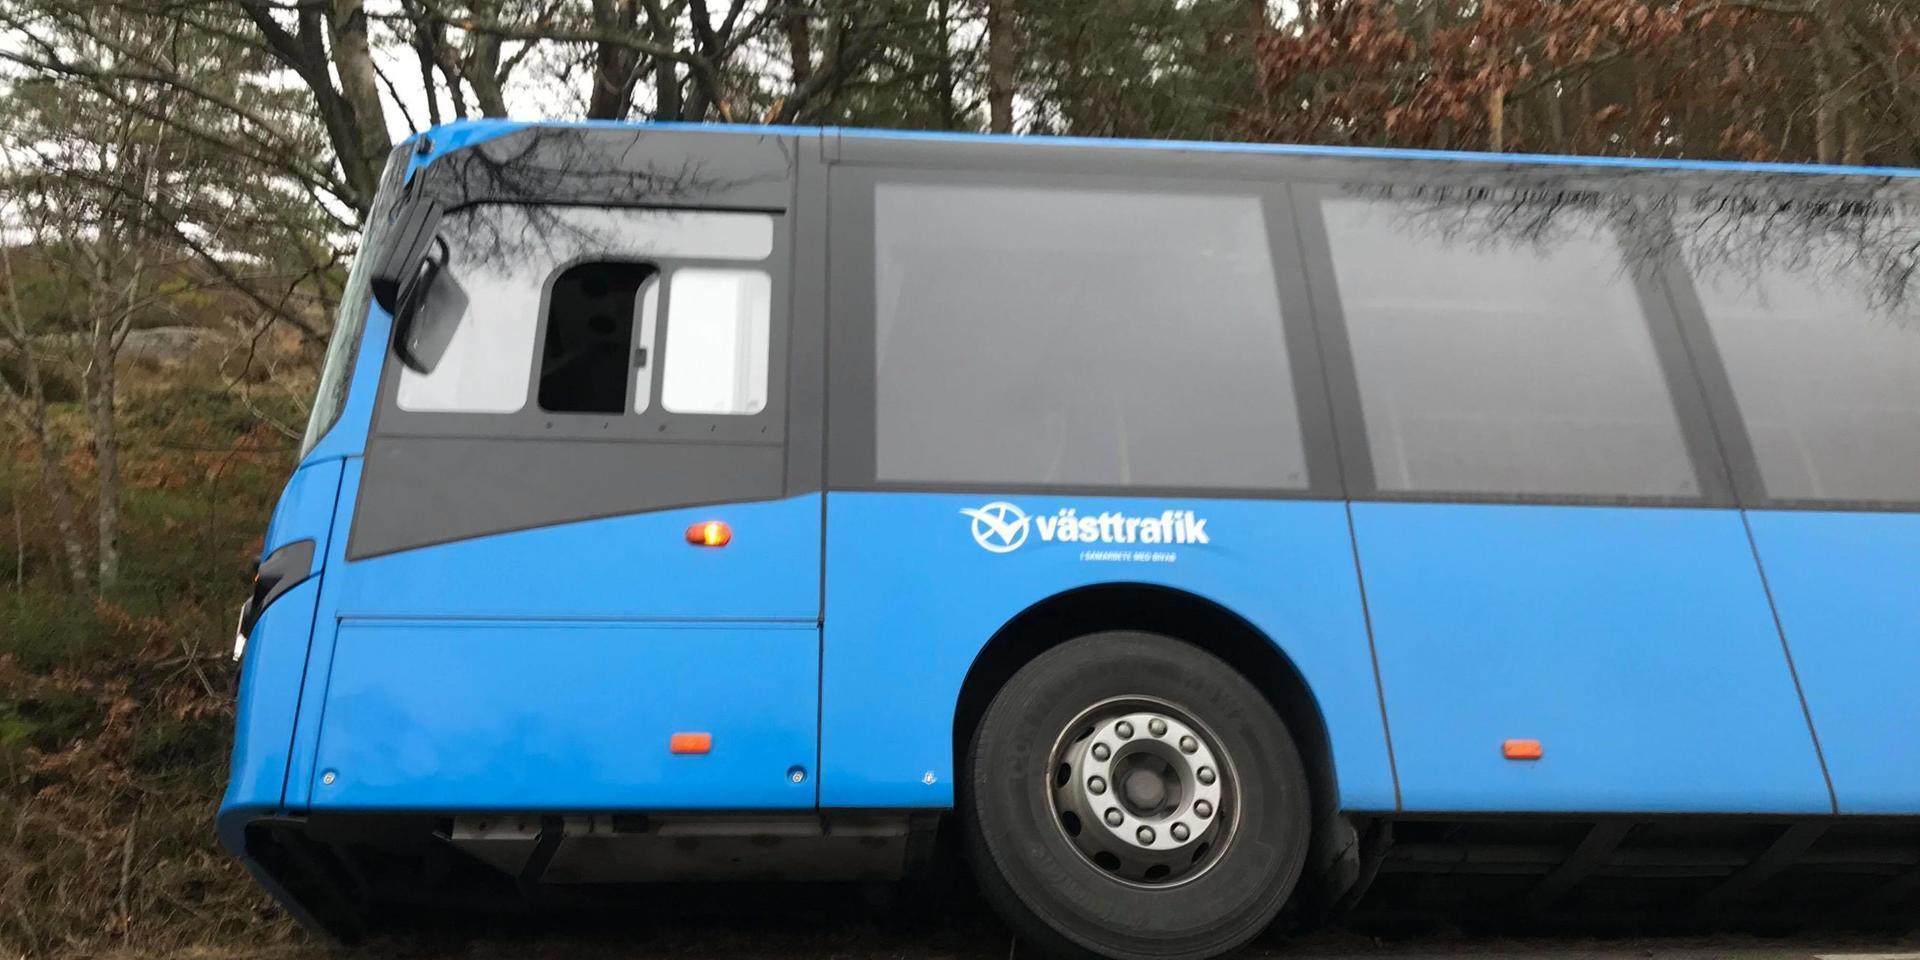 Vid 10-tiden hamnade en Västtrafikbuss i diket i Ulseröd utanför Lysekil. Västtrafiks störningsjour uppger att det gick bra för föraren och att det inte var några passagerare ombord.